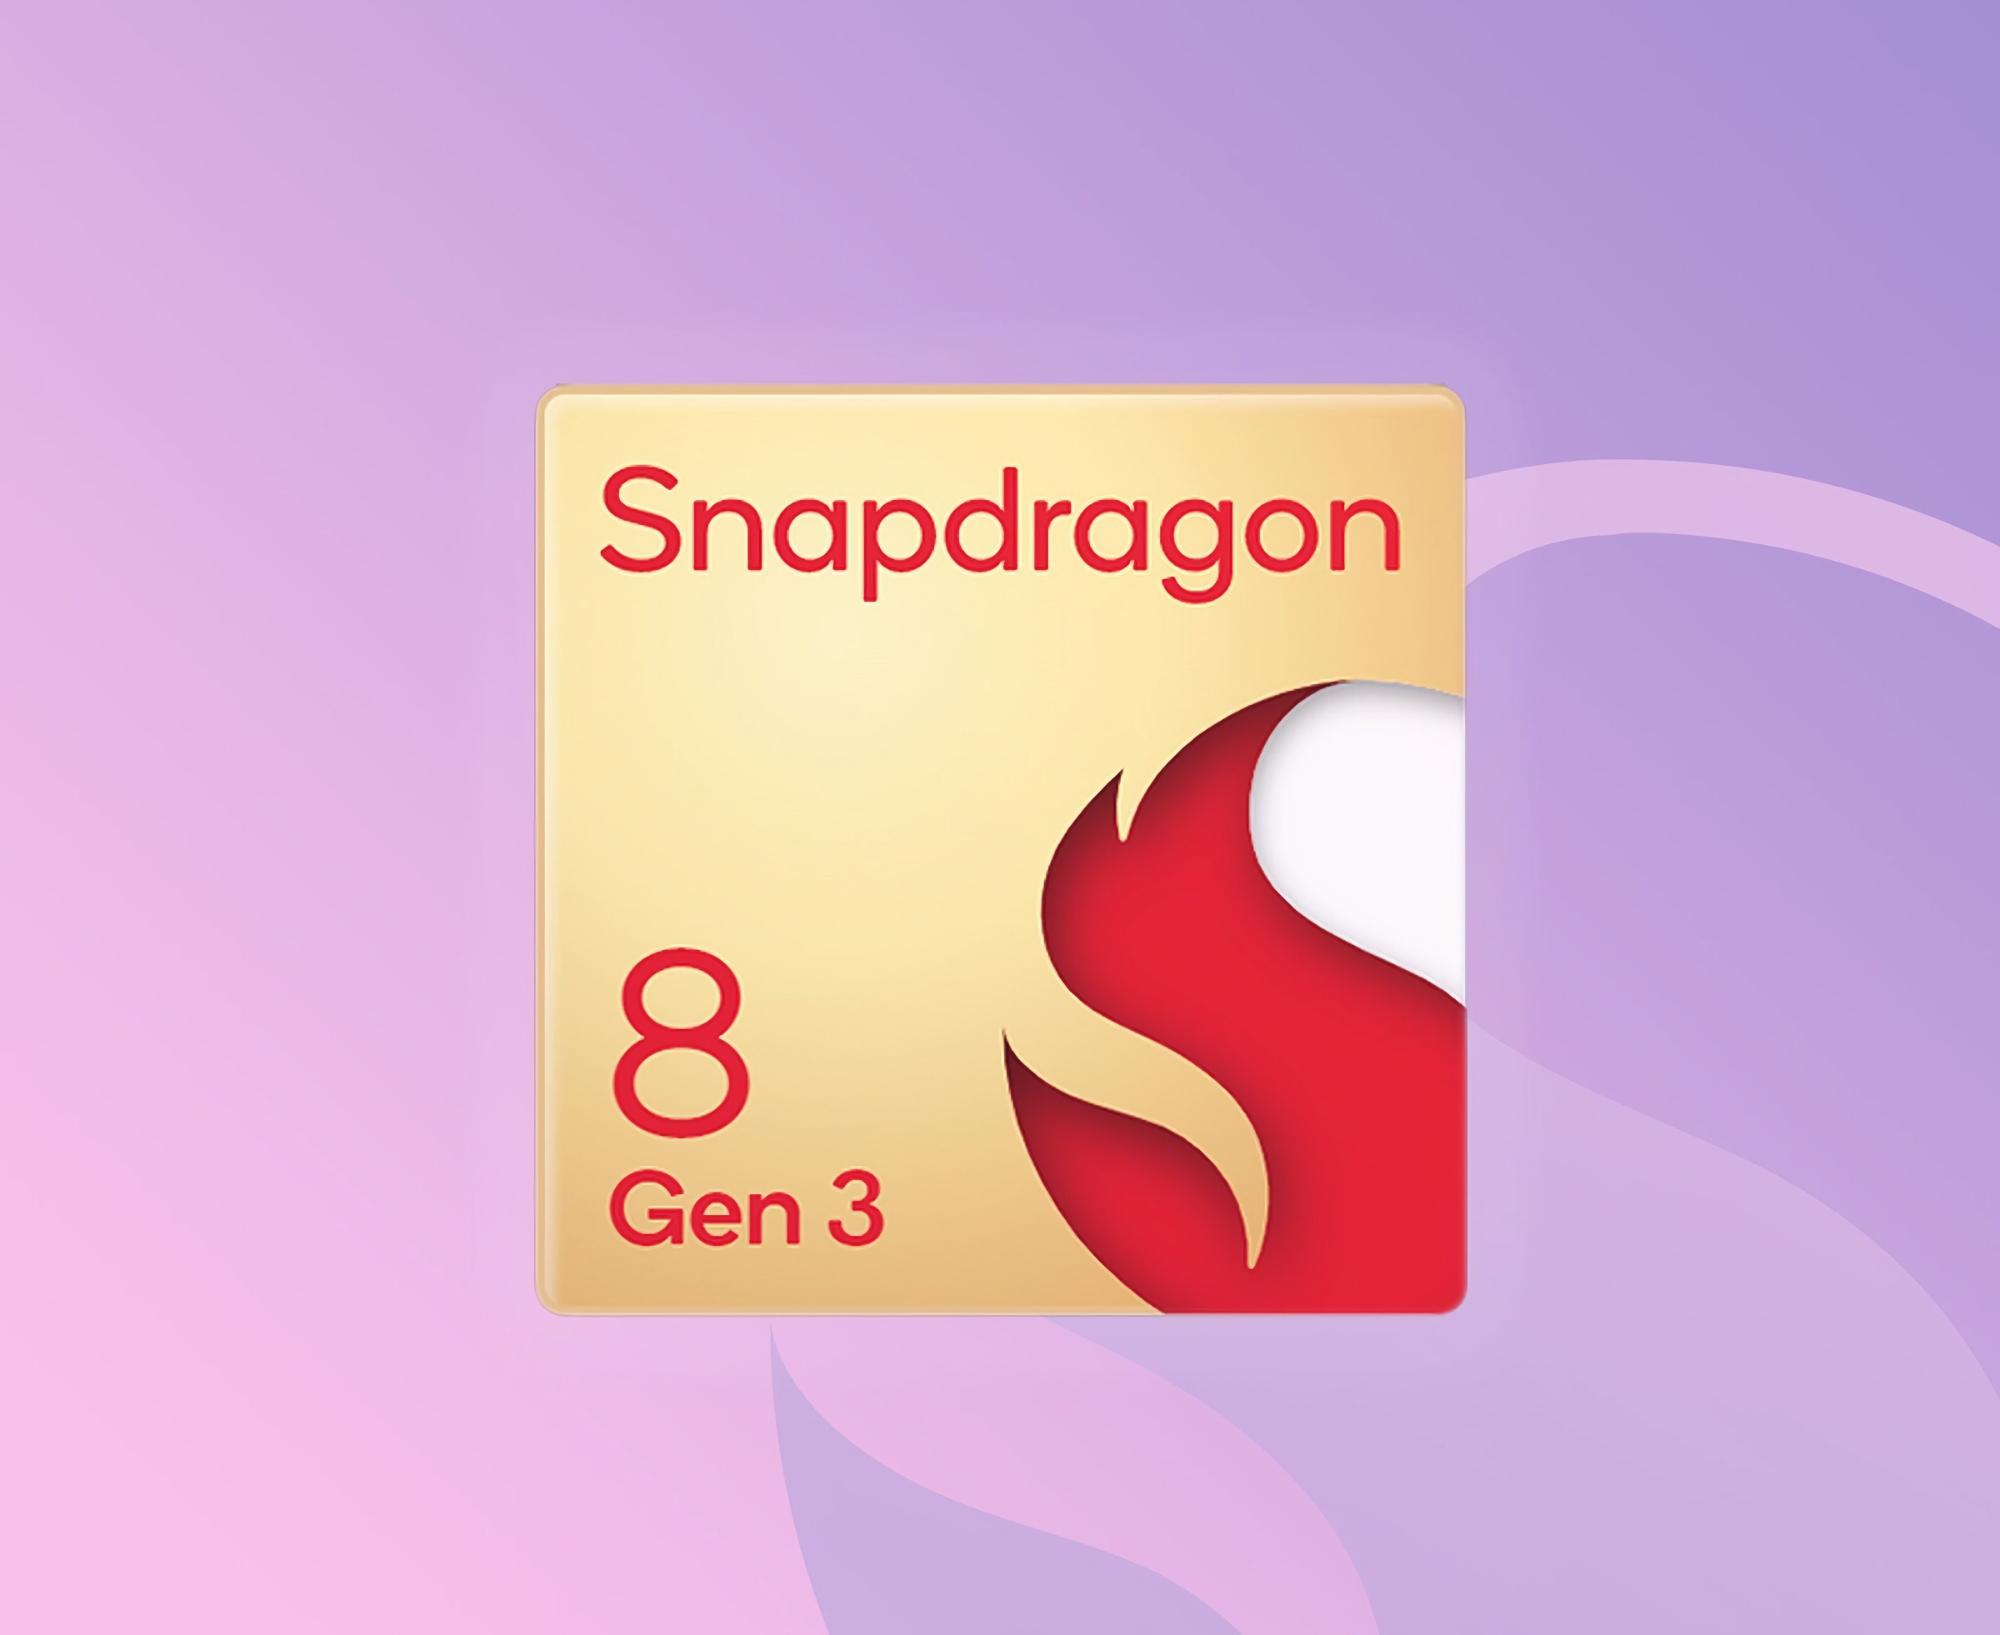 To już oficjalne: Qualcomm zaprezentuje układ Snapdragon 8 Gen 3 podczas wydarzenia, które odbędzie się w dniach 25-26 października.